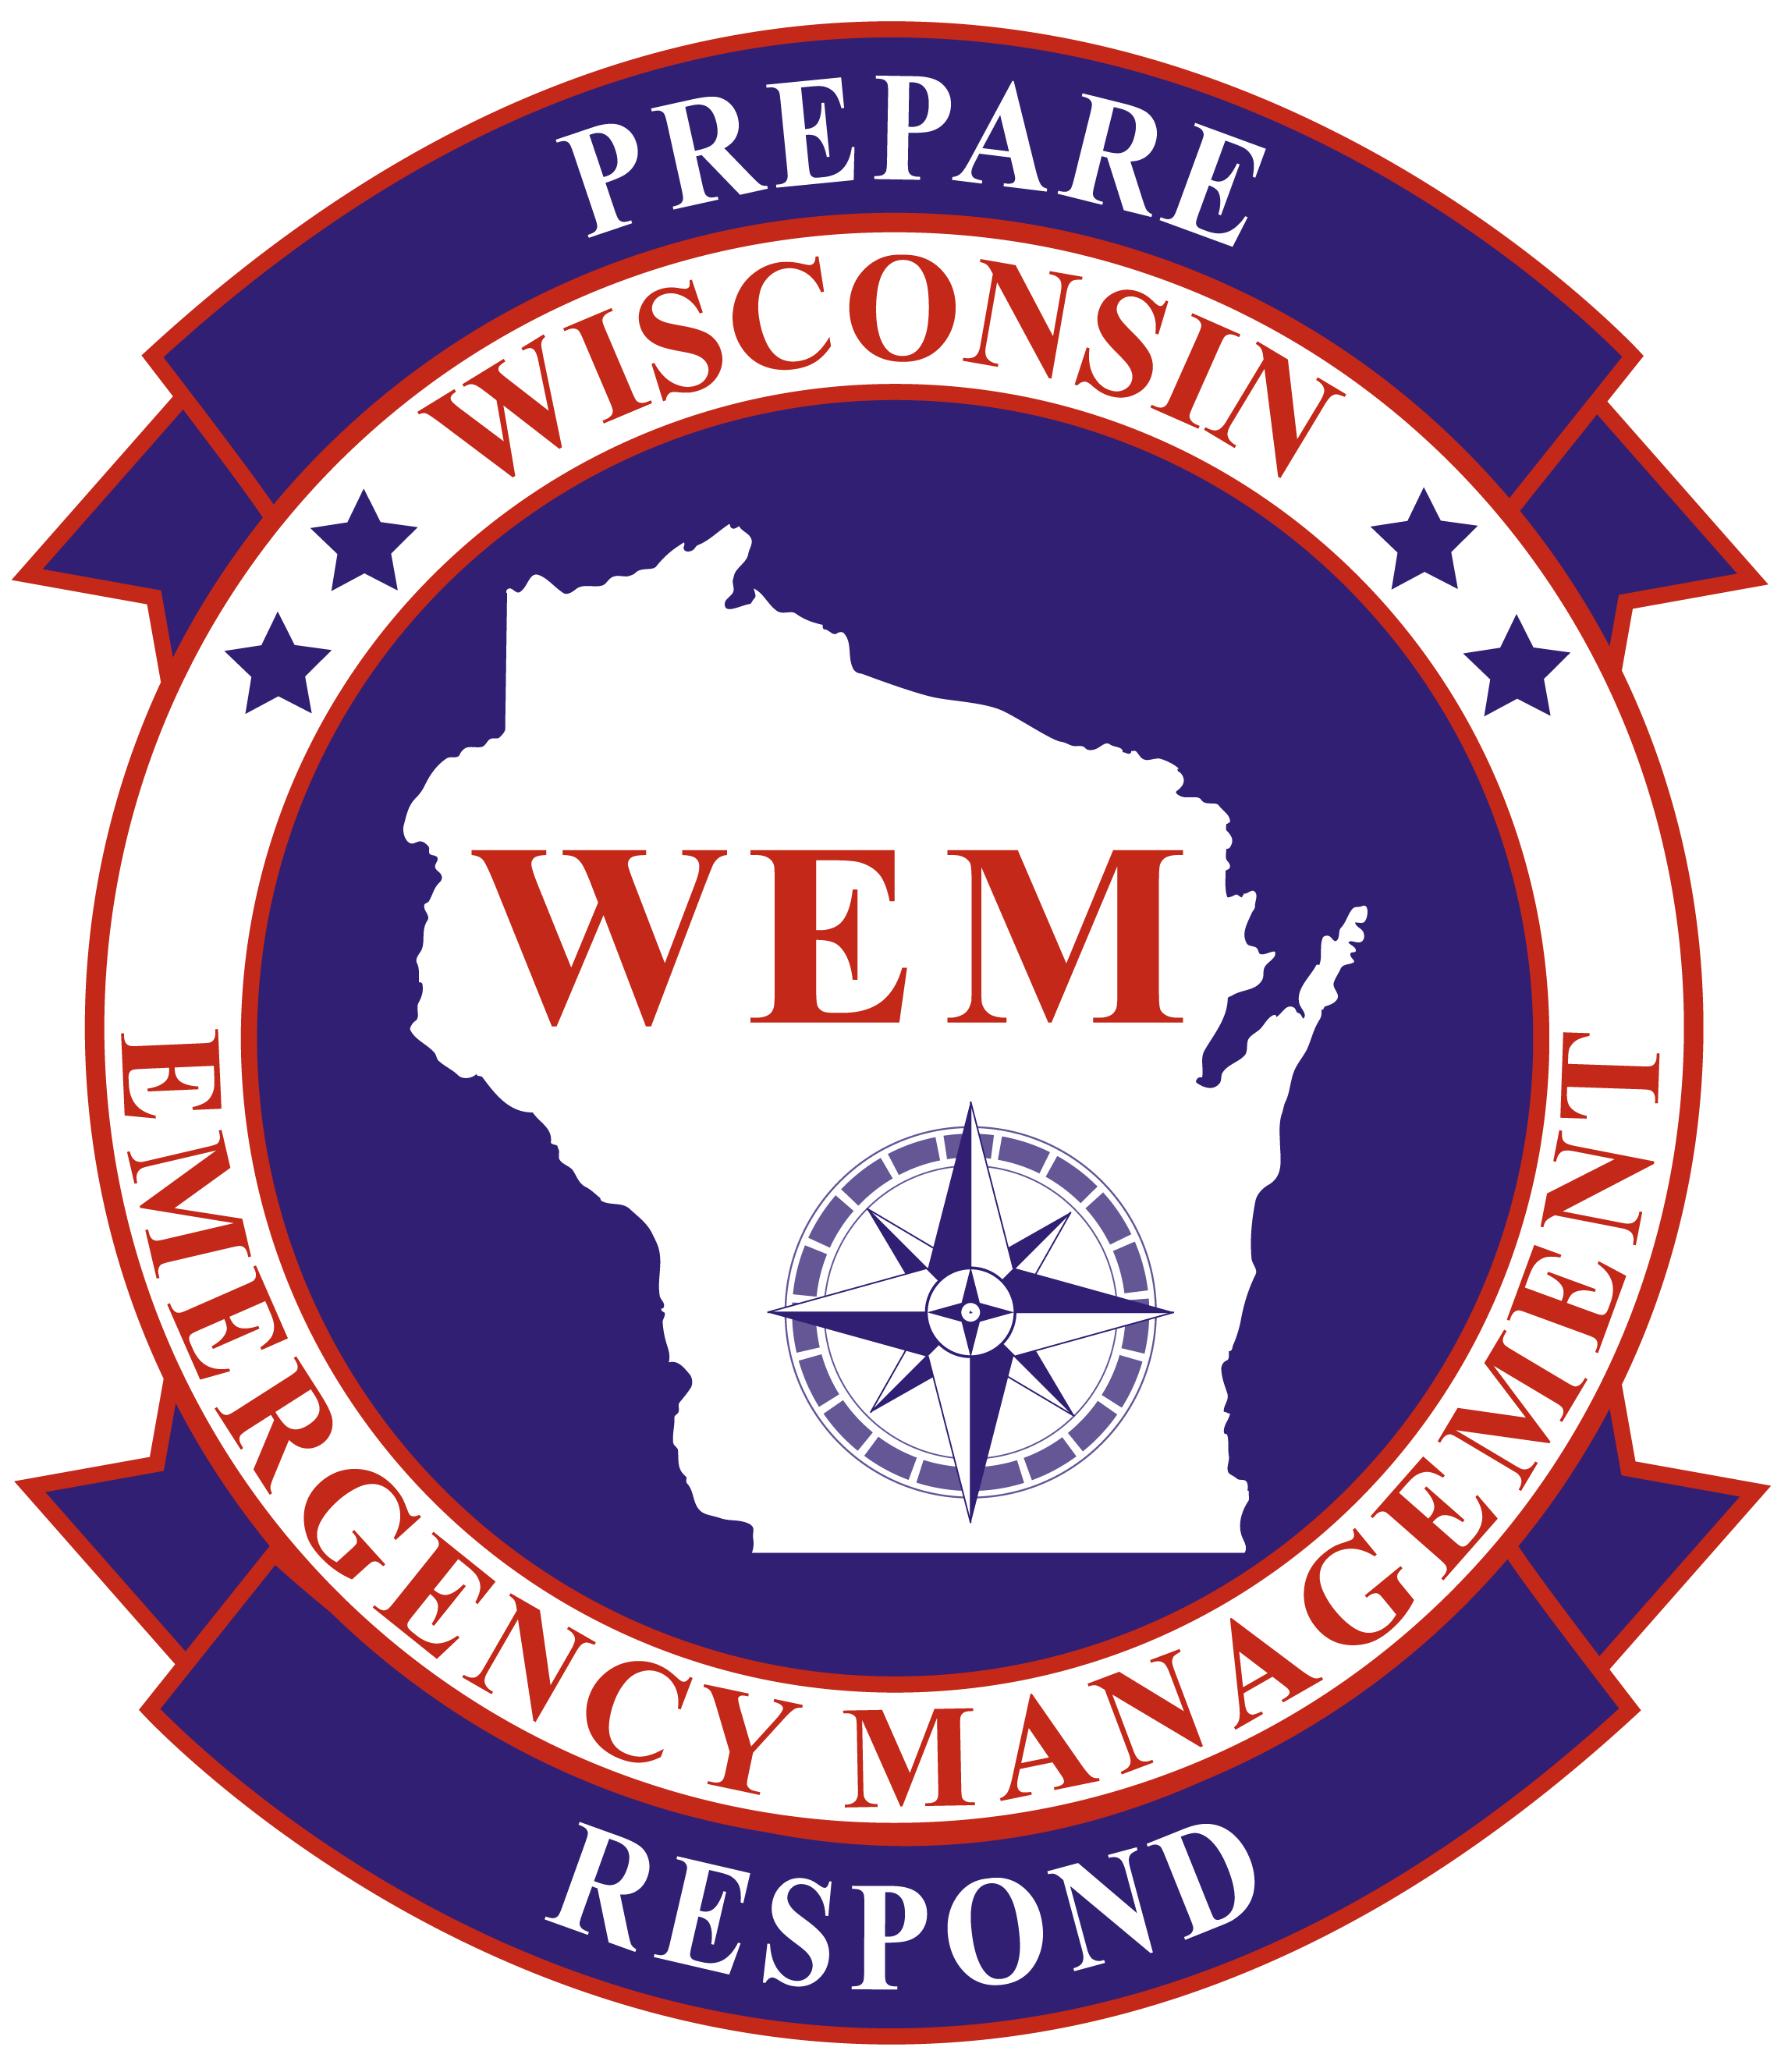 Wisconsin Tornado & Severe Weather Awareness Week